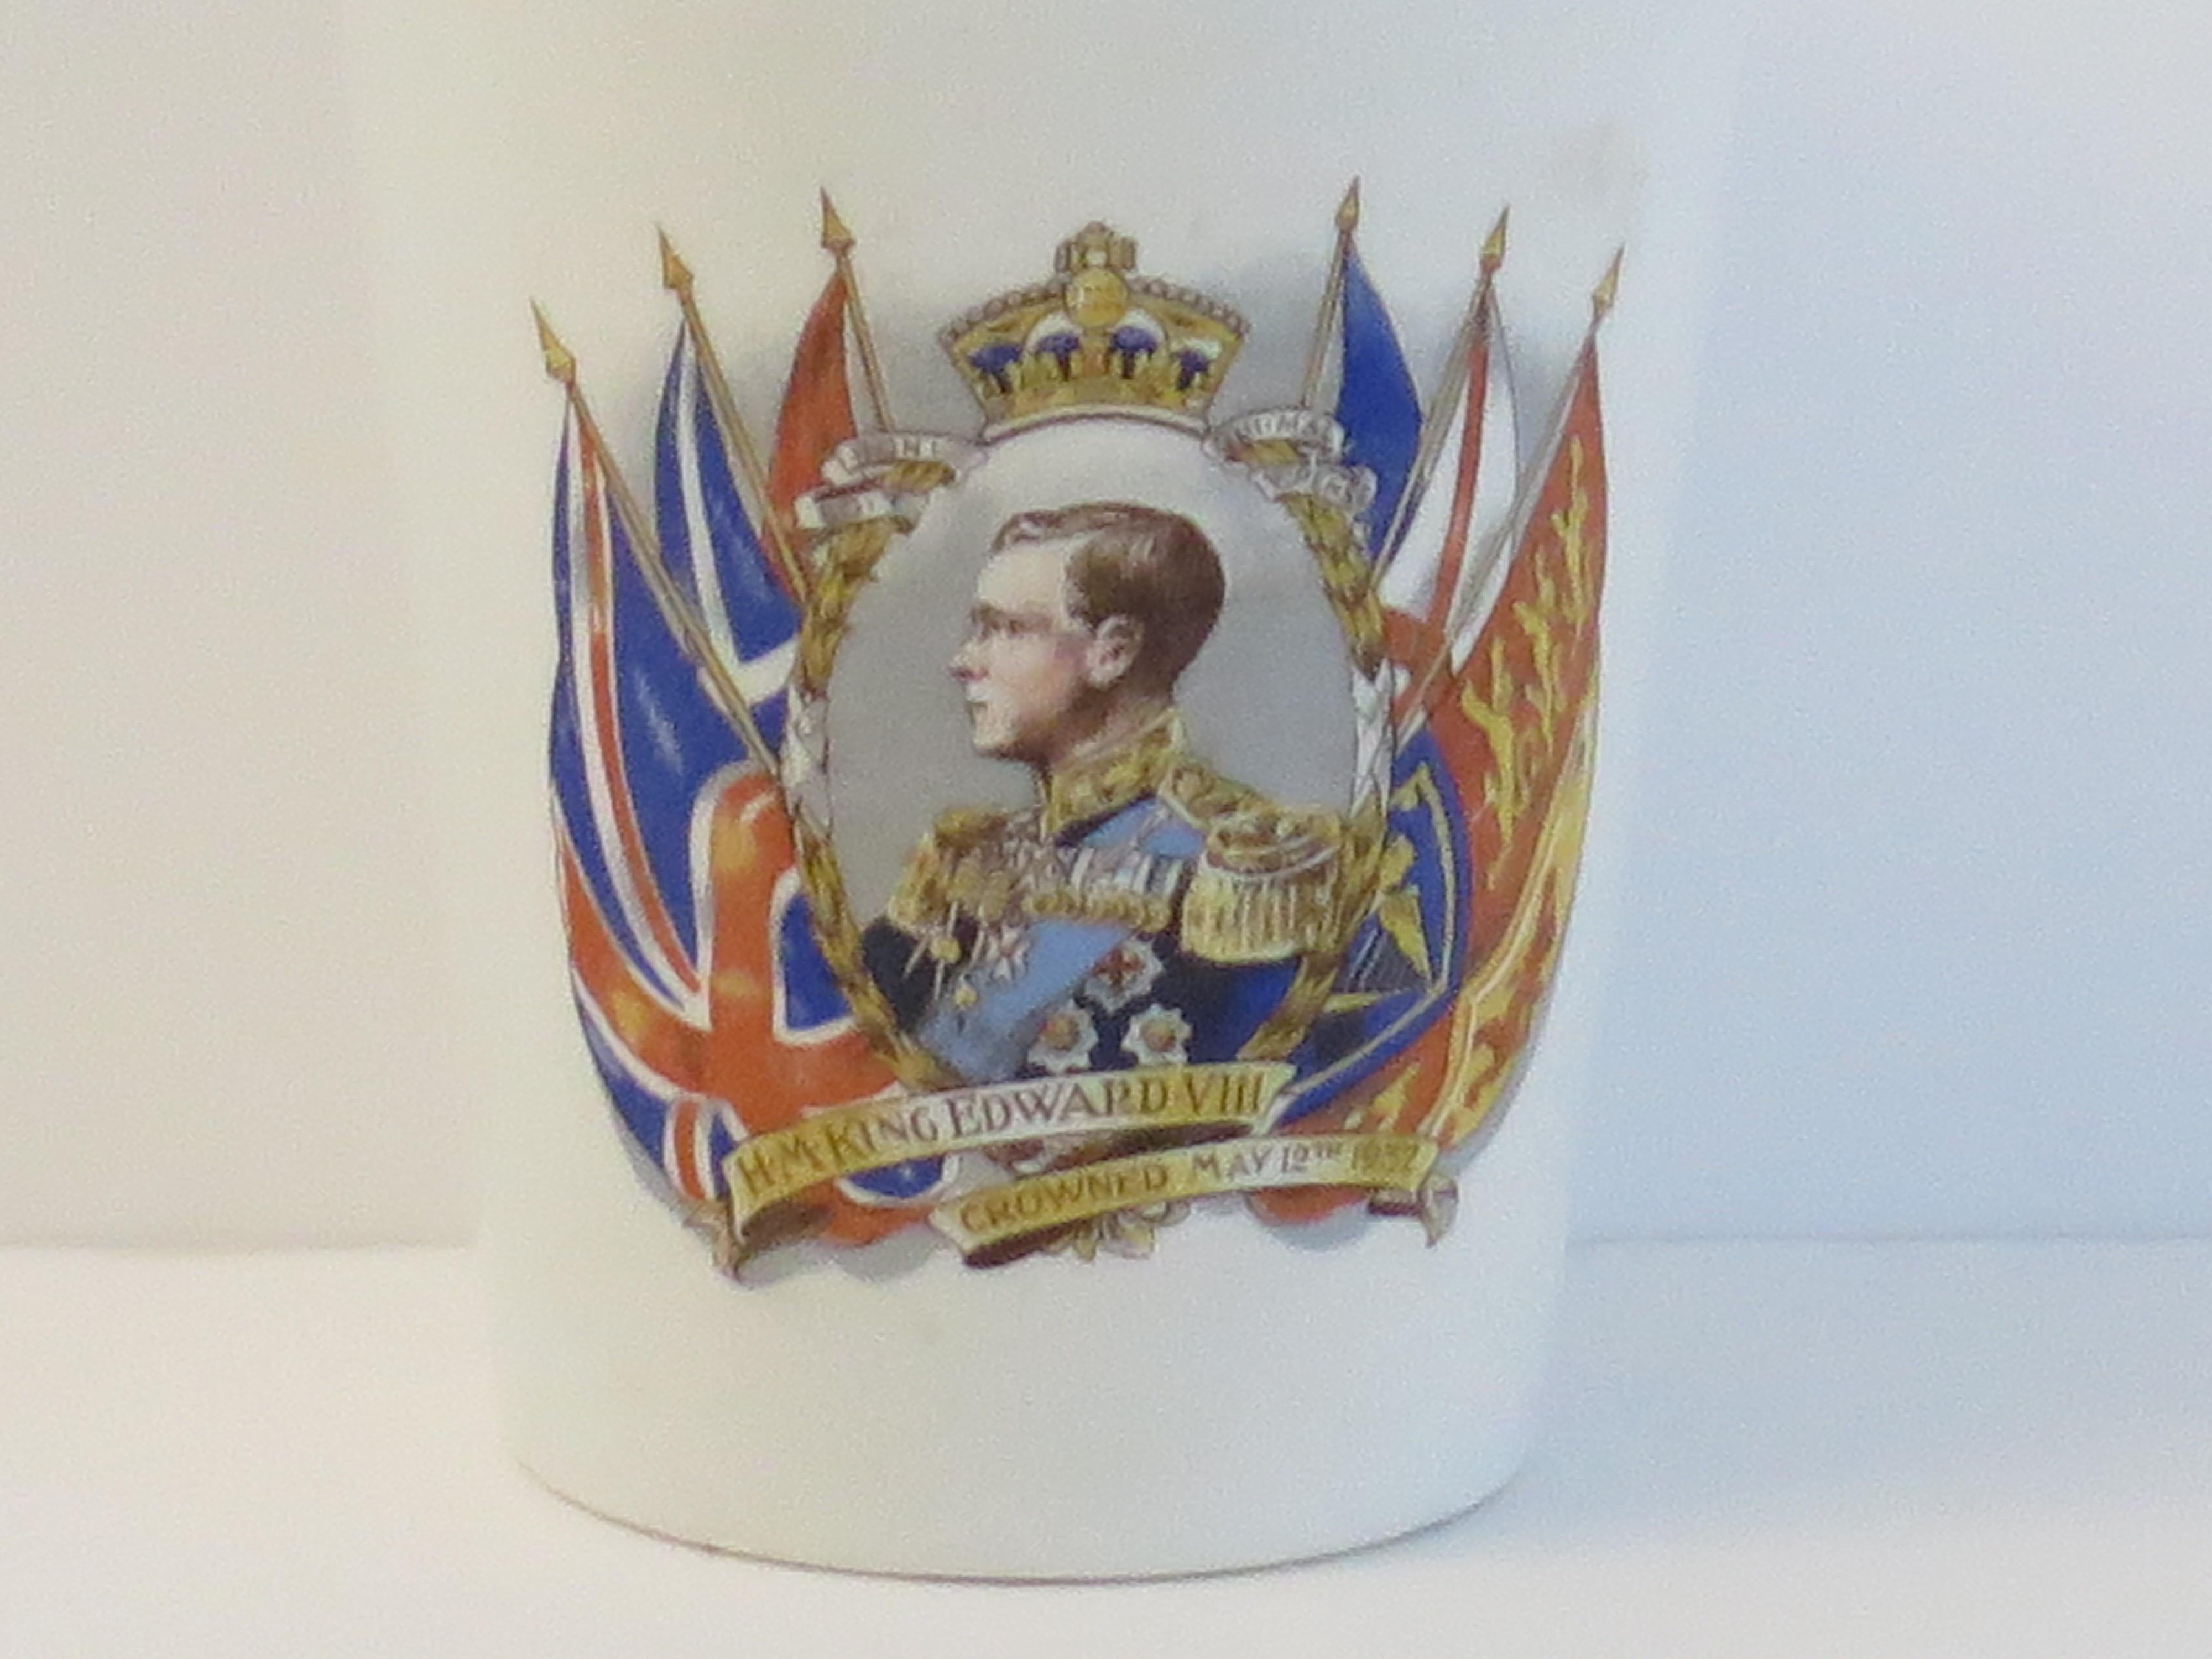 Se trata de un vaso conmemorativo real de loza (cerámica) que celebra la coronación prevista del rey Eduardo V111 el 12 de mayo de 1937.

El vaso o taza cónica habría sido fabricado por una de las muchas alfarerías de Staffordshire, en Inglaterra,